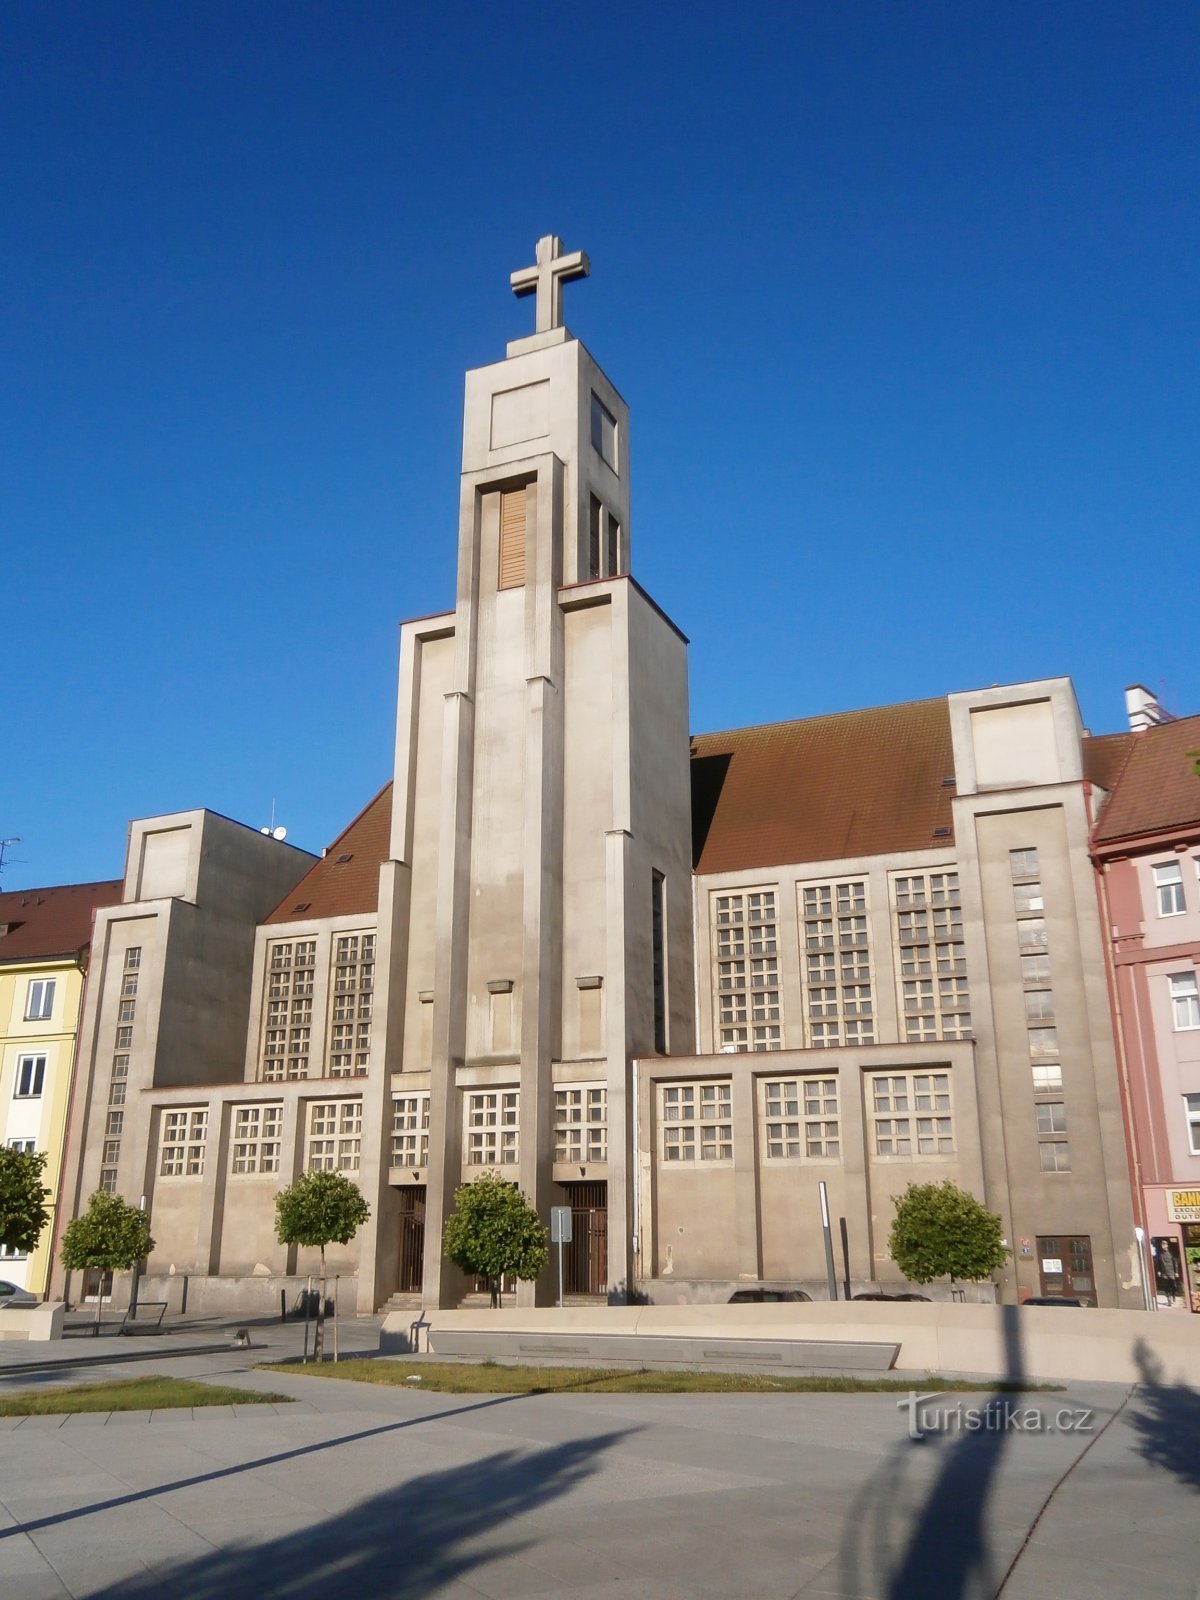 Chiesa del Divin Cuore del Signore (Hradec Králové, 25.6.2017/XNUMX/XNUMX)